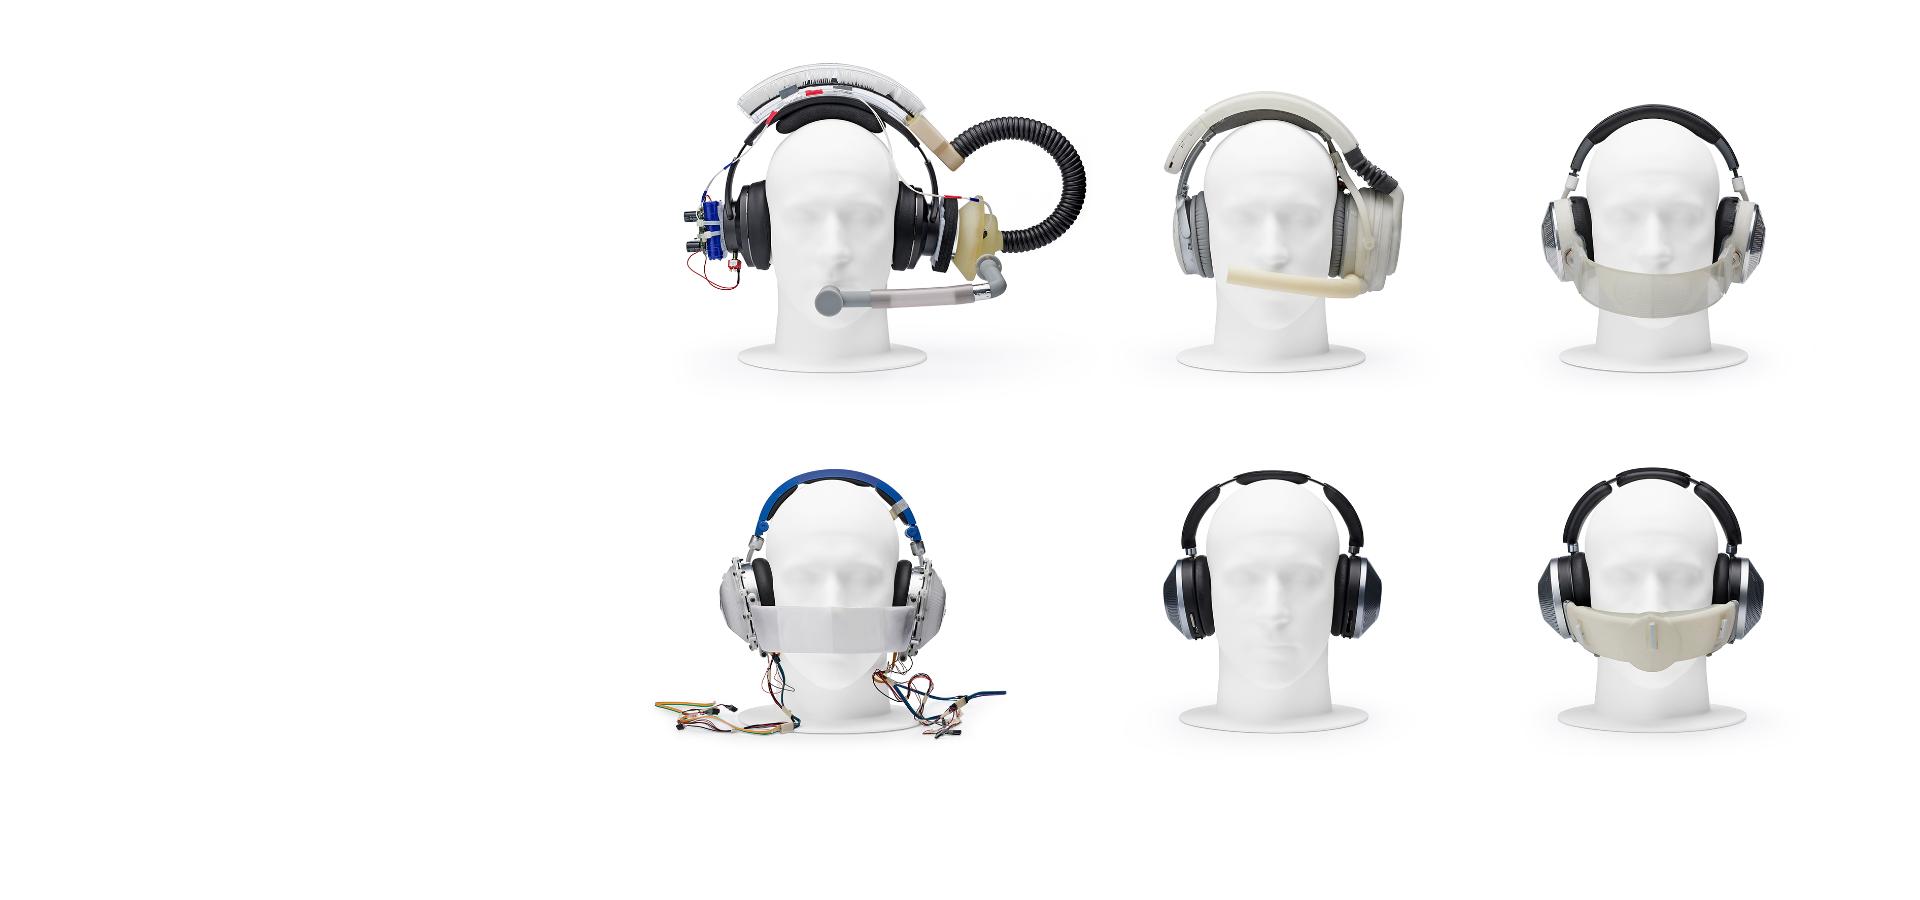 4 maniquís usando varior prototipos de audífonos